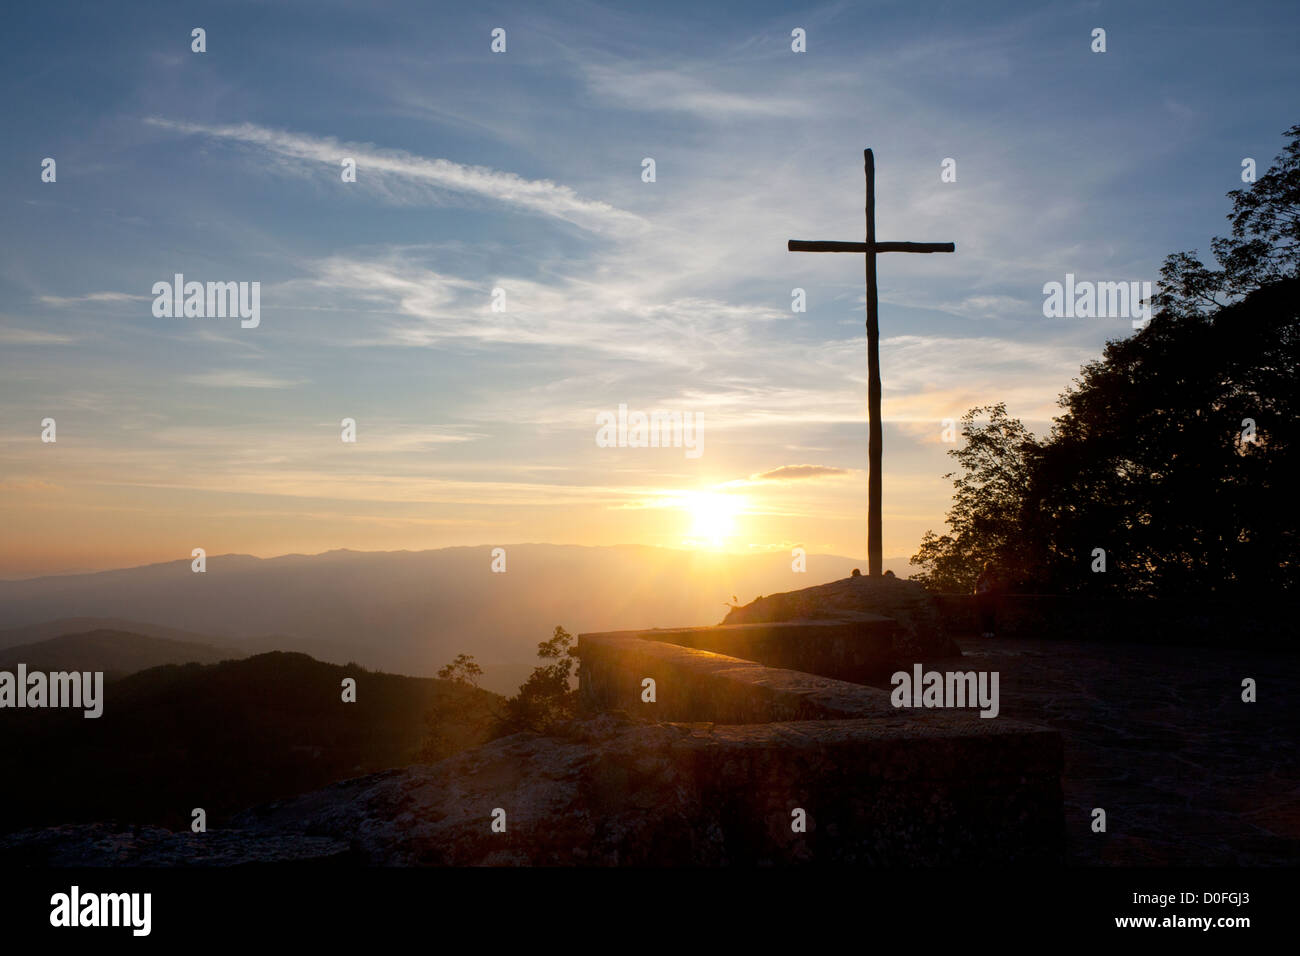 La Verna convento francescano croce di legno / crocifisso sulla cima della montagna al tramonto della Provincia di Arezzo Toscana Italia Foto Stock